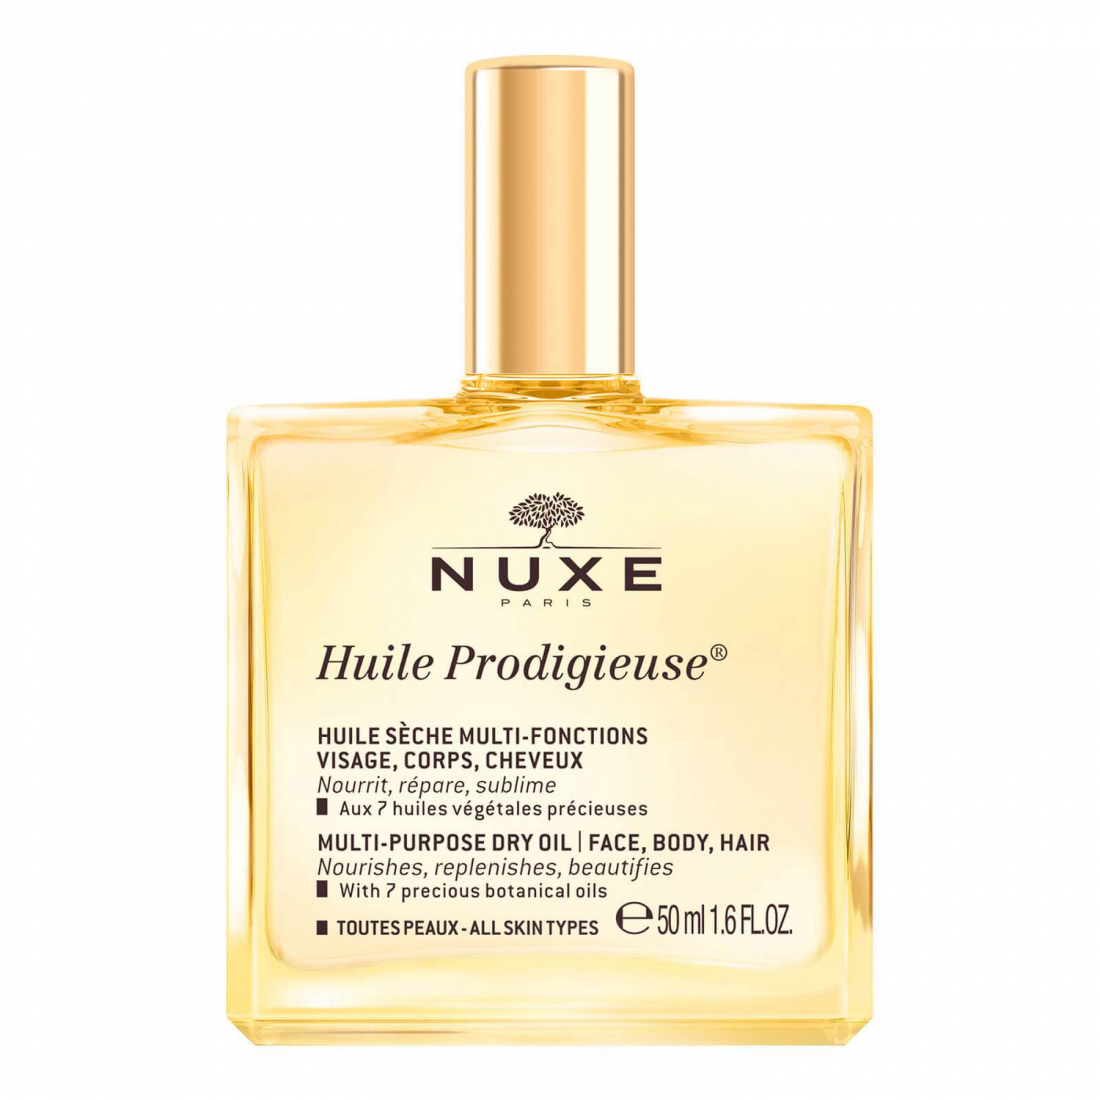 'Huile Prodigieuse®' Gesichts-, Körper- und Haaröl - 50 ml